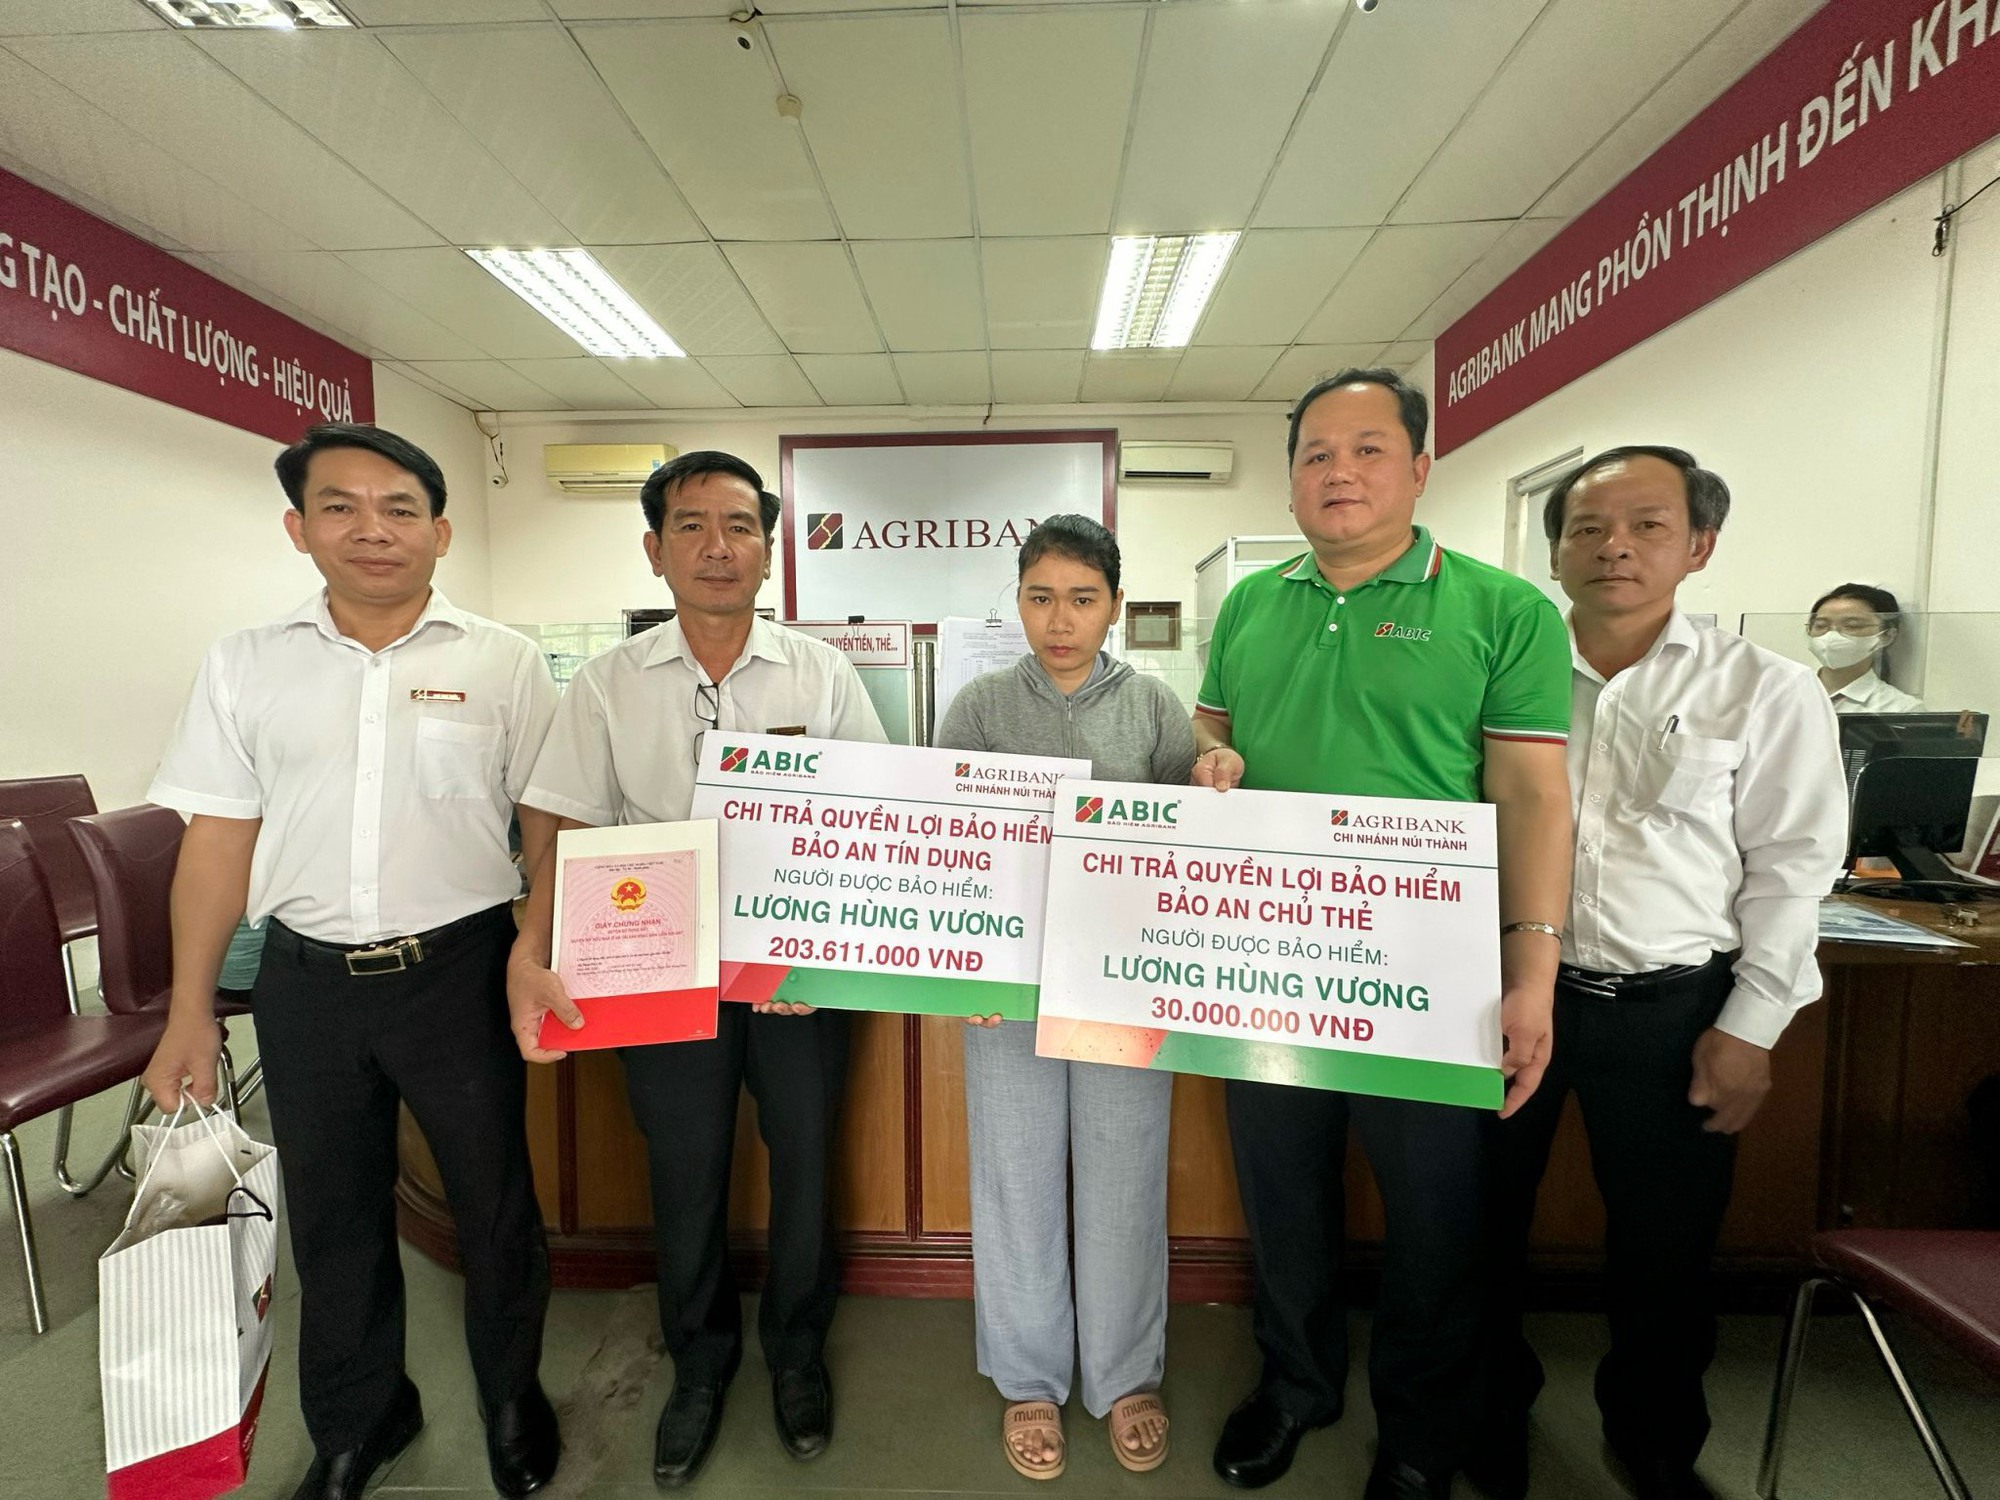 Bảo hiểm Agribank Đà Nẵng chi trả bảo hiểm cho khách hàng trong vụ chìm tàu ở Trường Sa - Ảnh 1.